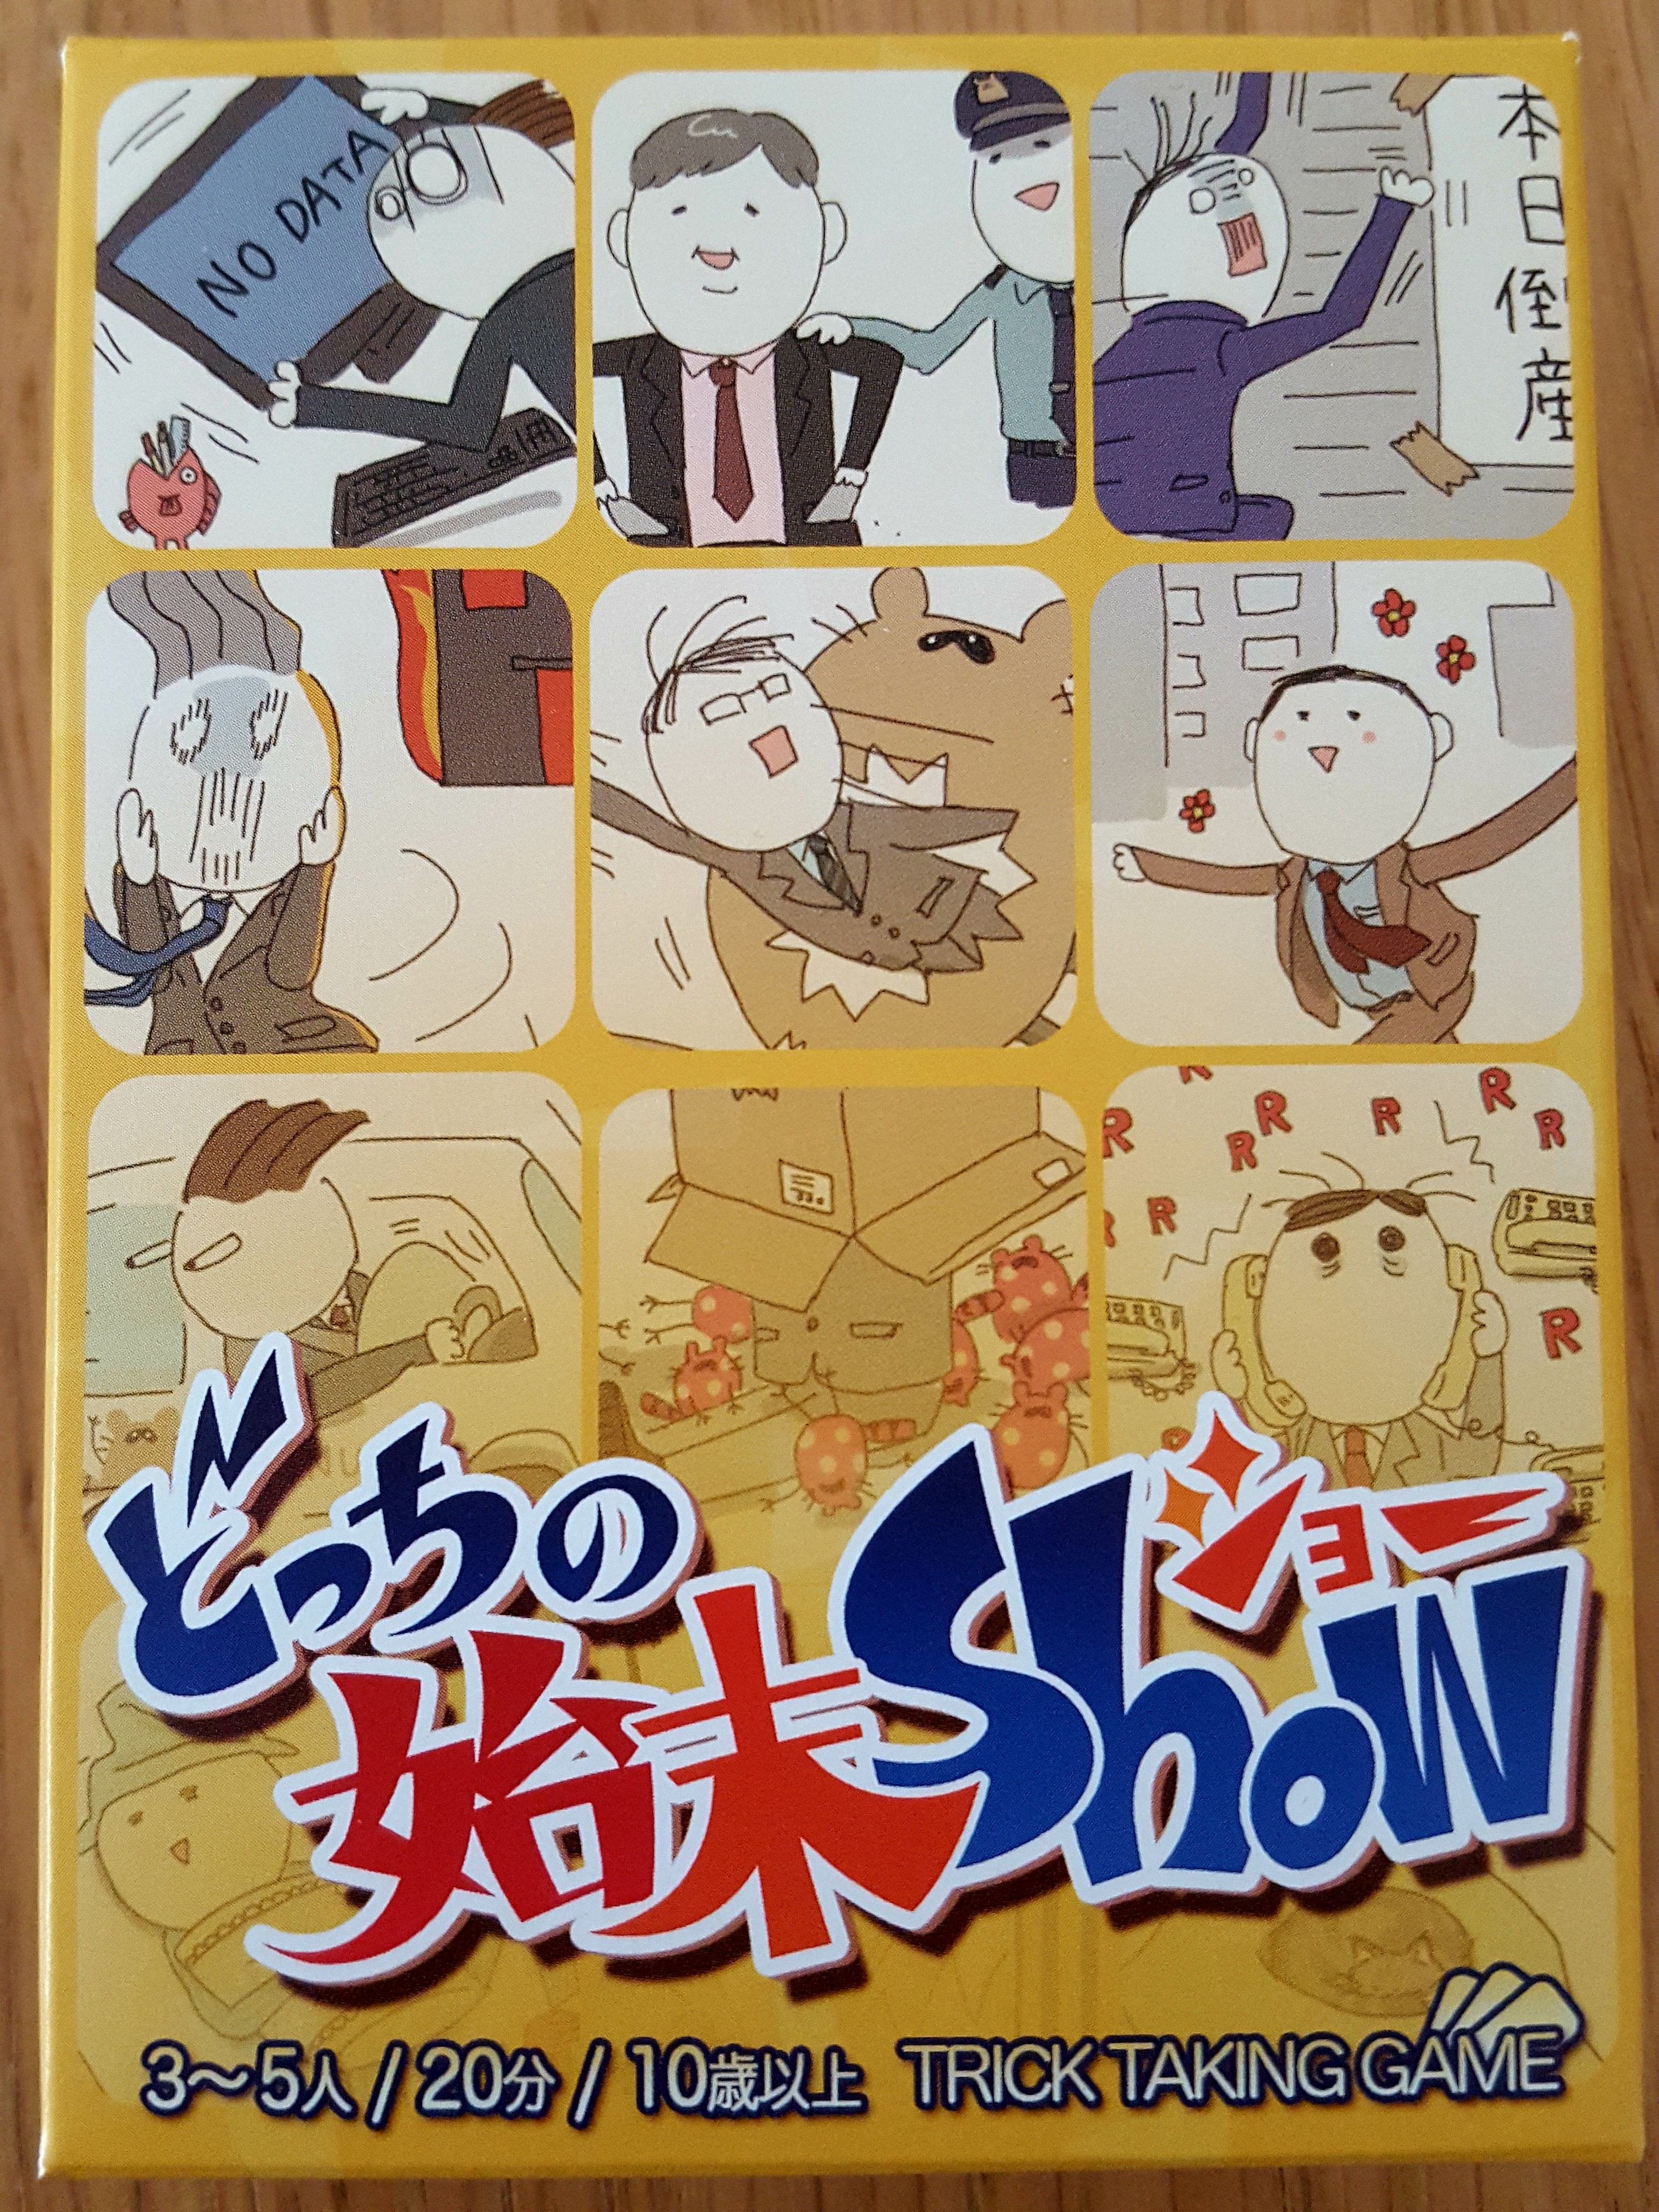 Docchi no Shimatsu Show